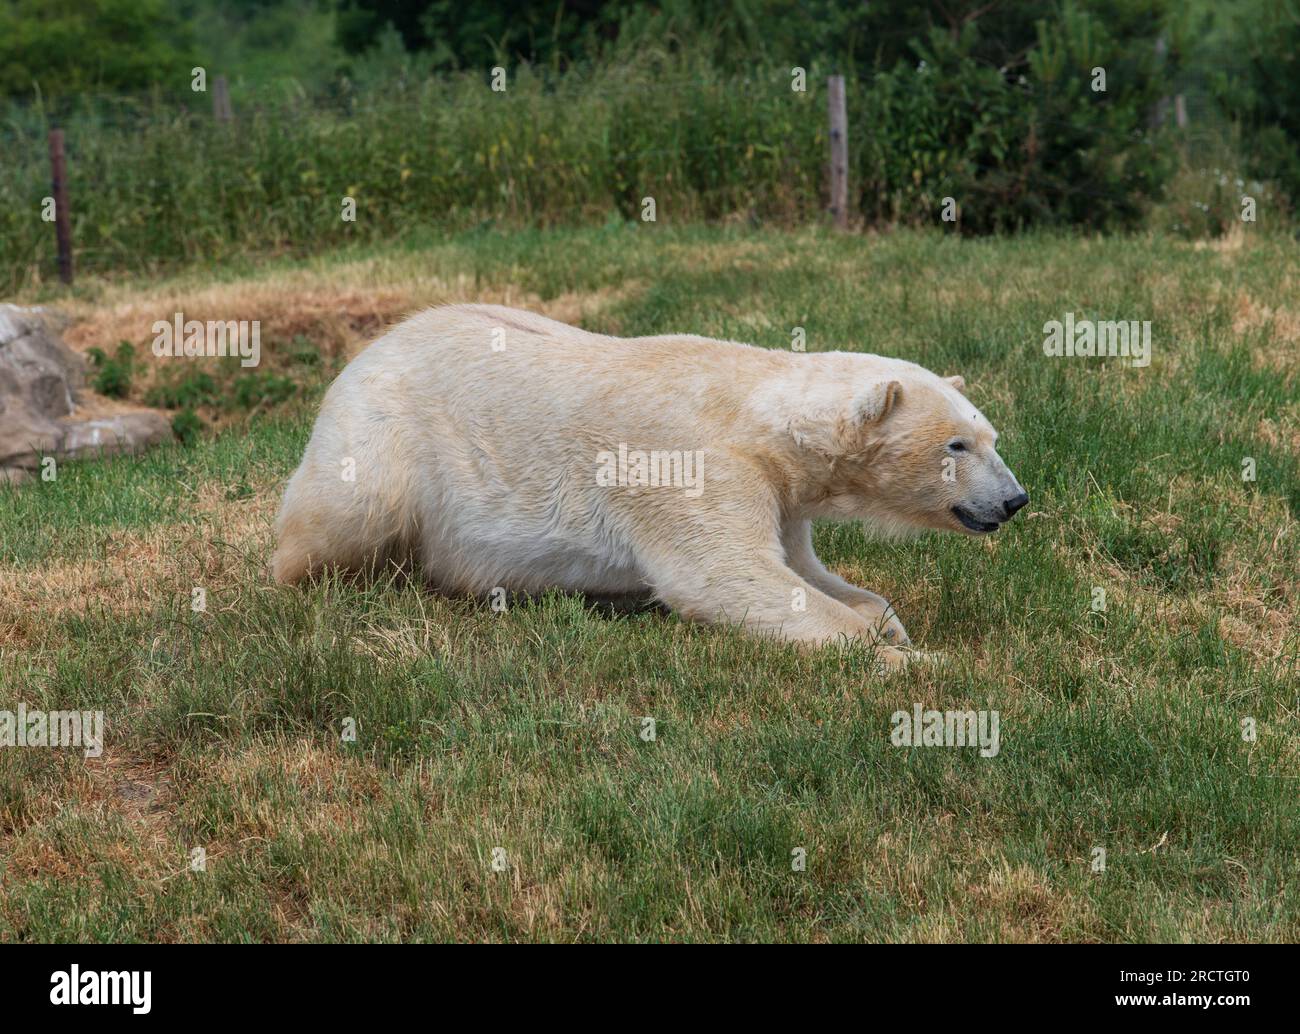 Un orso polare è visto allo Yorkshire Wildlife Park come parte del "progetto Polar". L'unico progetto di conservazione degli orsi polari dell'Inghilterra e il più grande al di fuori di C Foto Stock